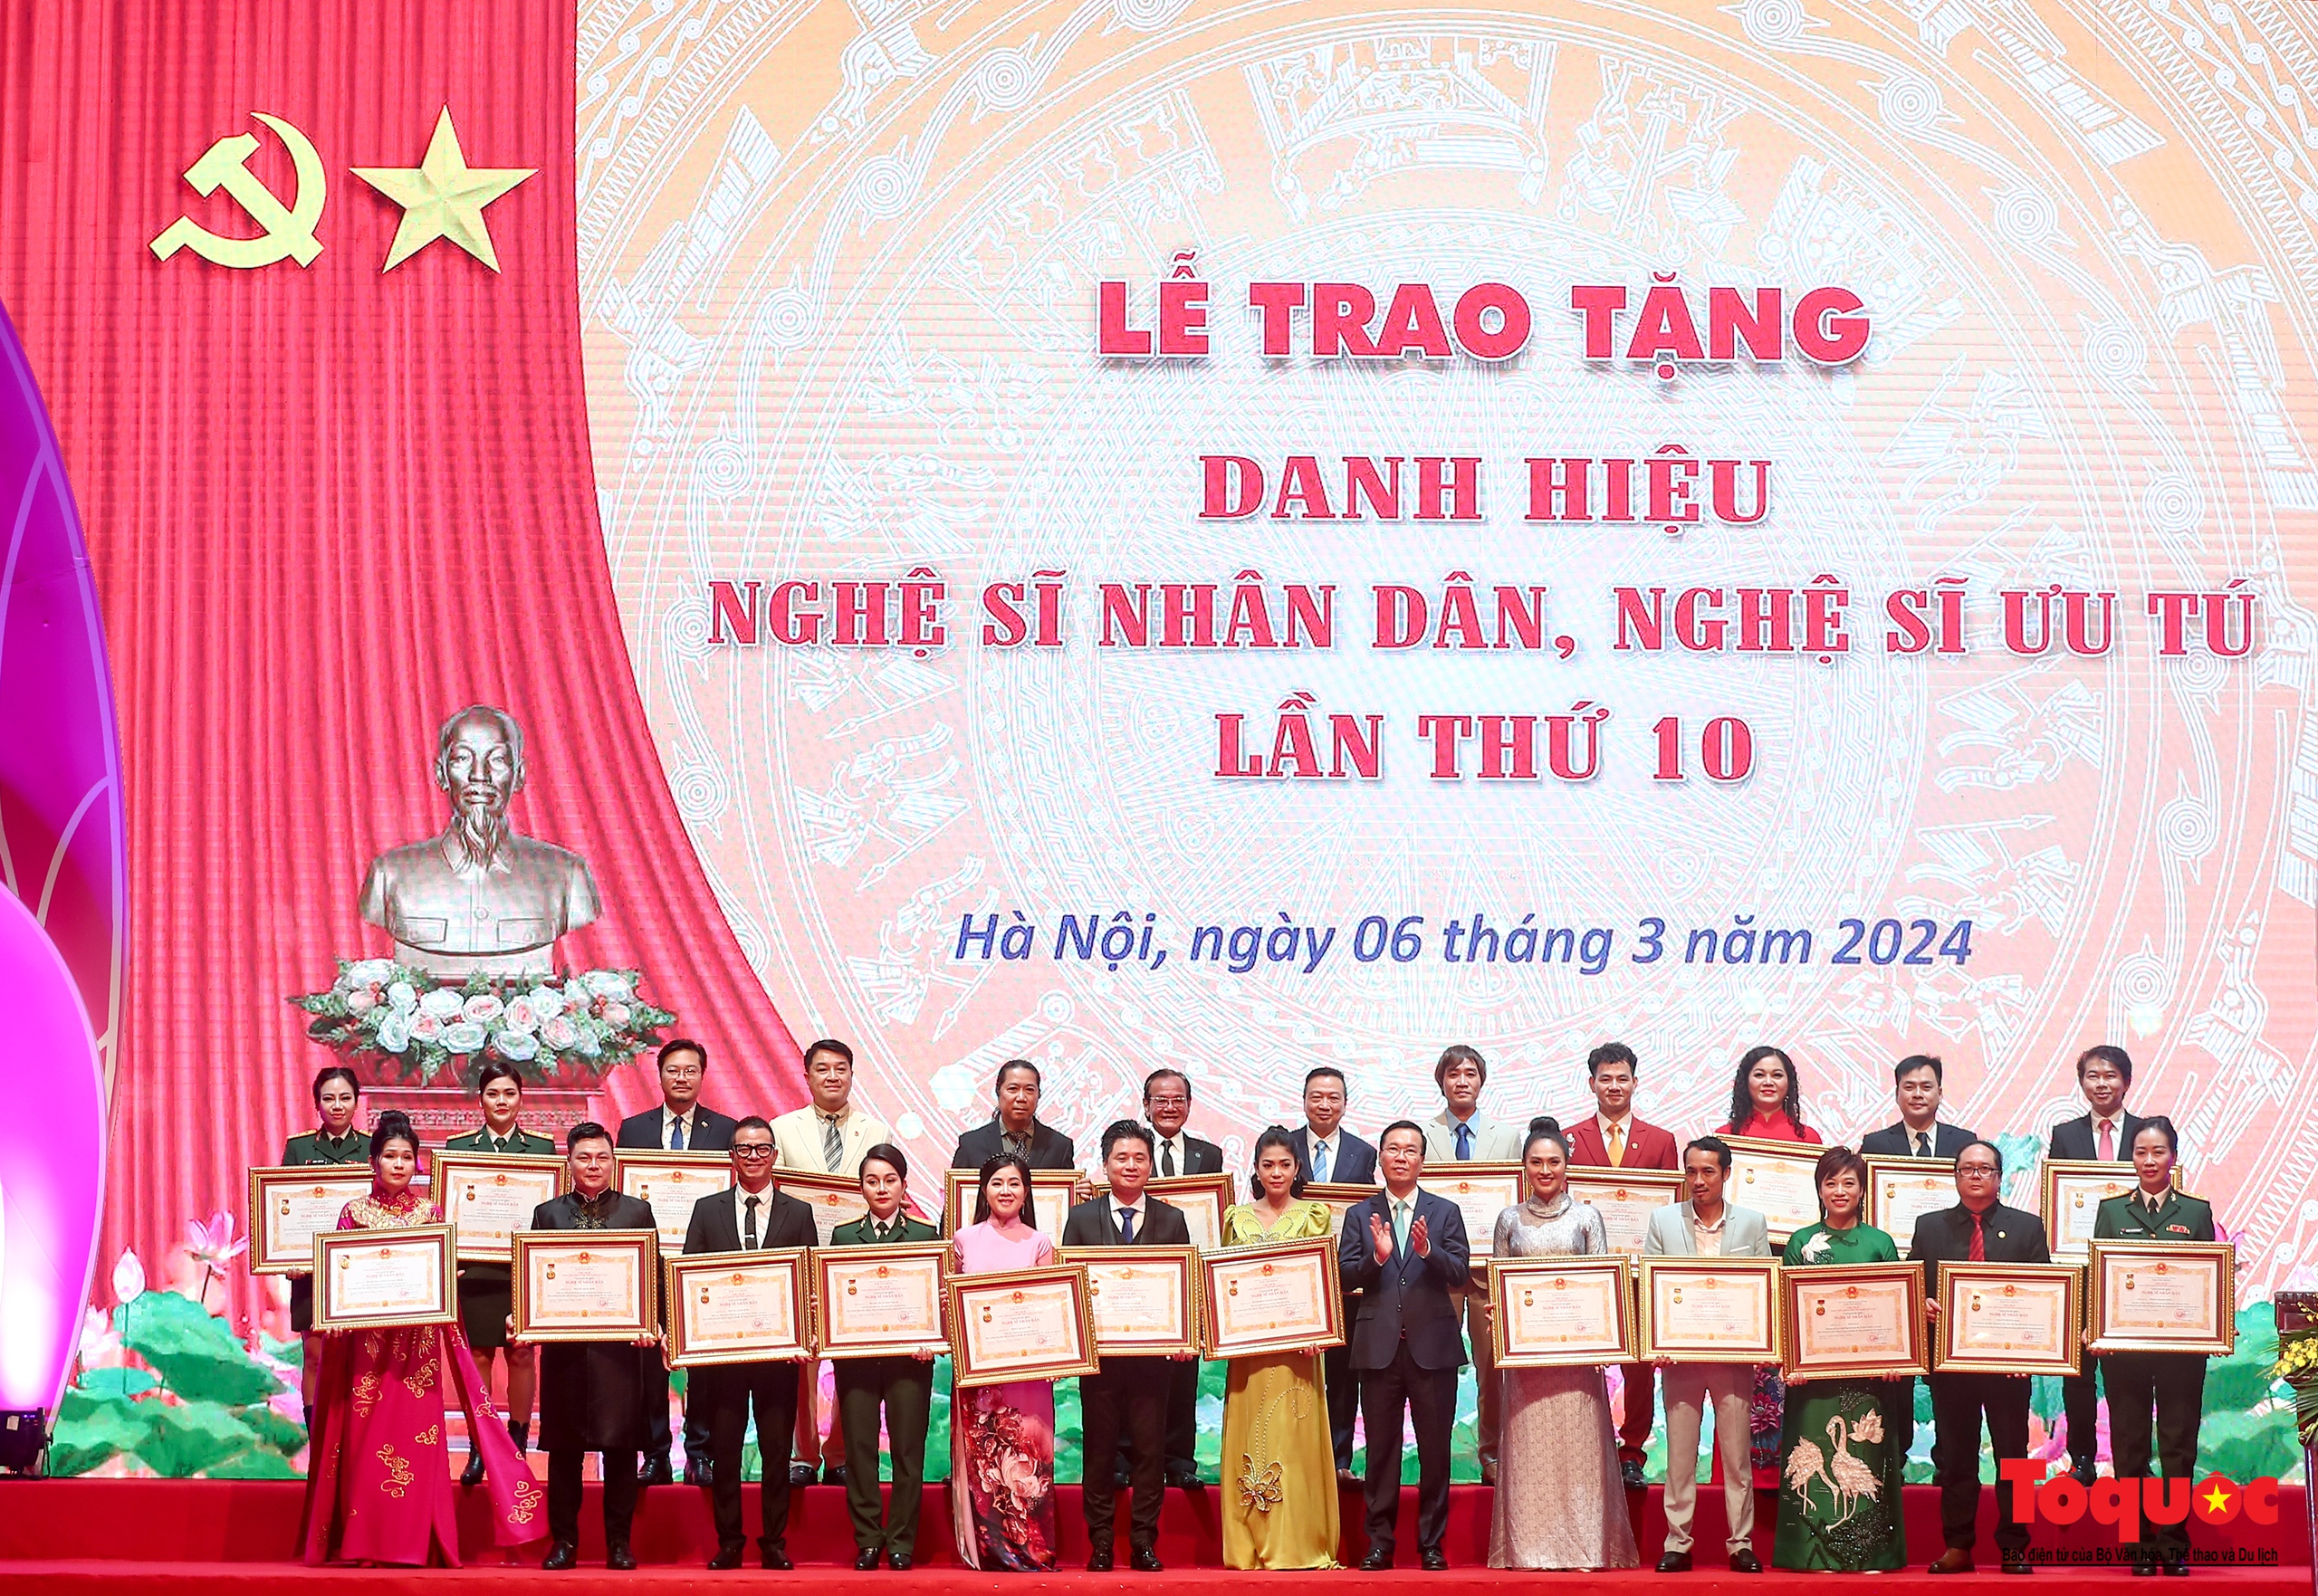 Toàn cảnh Lễ trao tặng danh hiệu Nghệ sĩ Nhân dân, Nghệ sĩ Ưu tú lần thứ 10 - Ảnh 13.